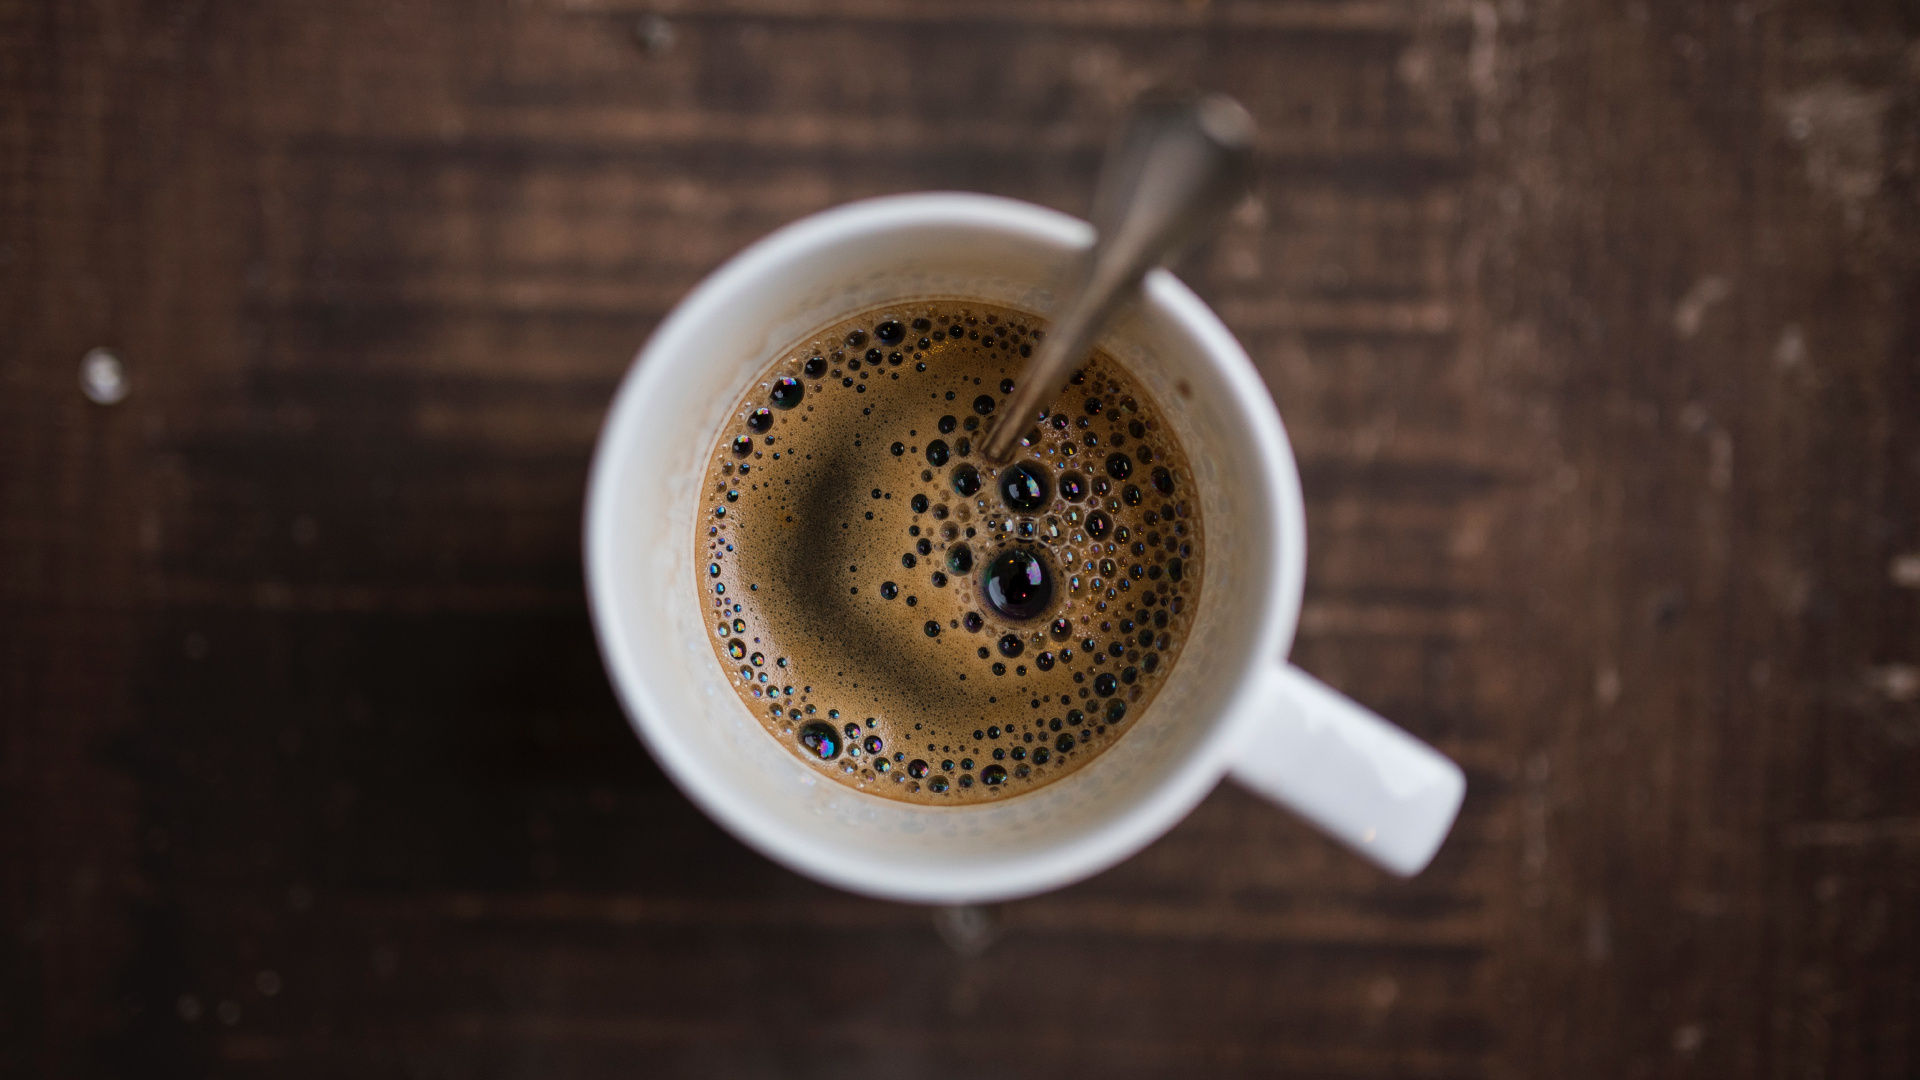 速溶咖啡, 咖啡馆, 咖啡因, 咖啡杯, 浓缩咖啡 壁纸 1920x1080 允许